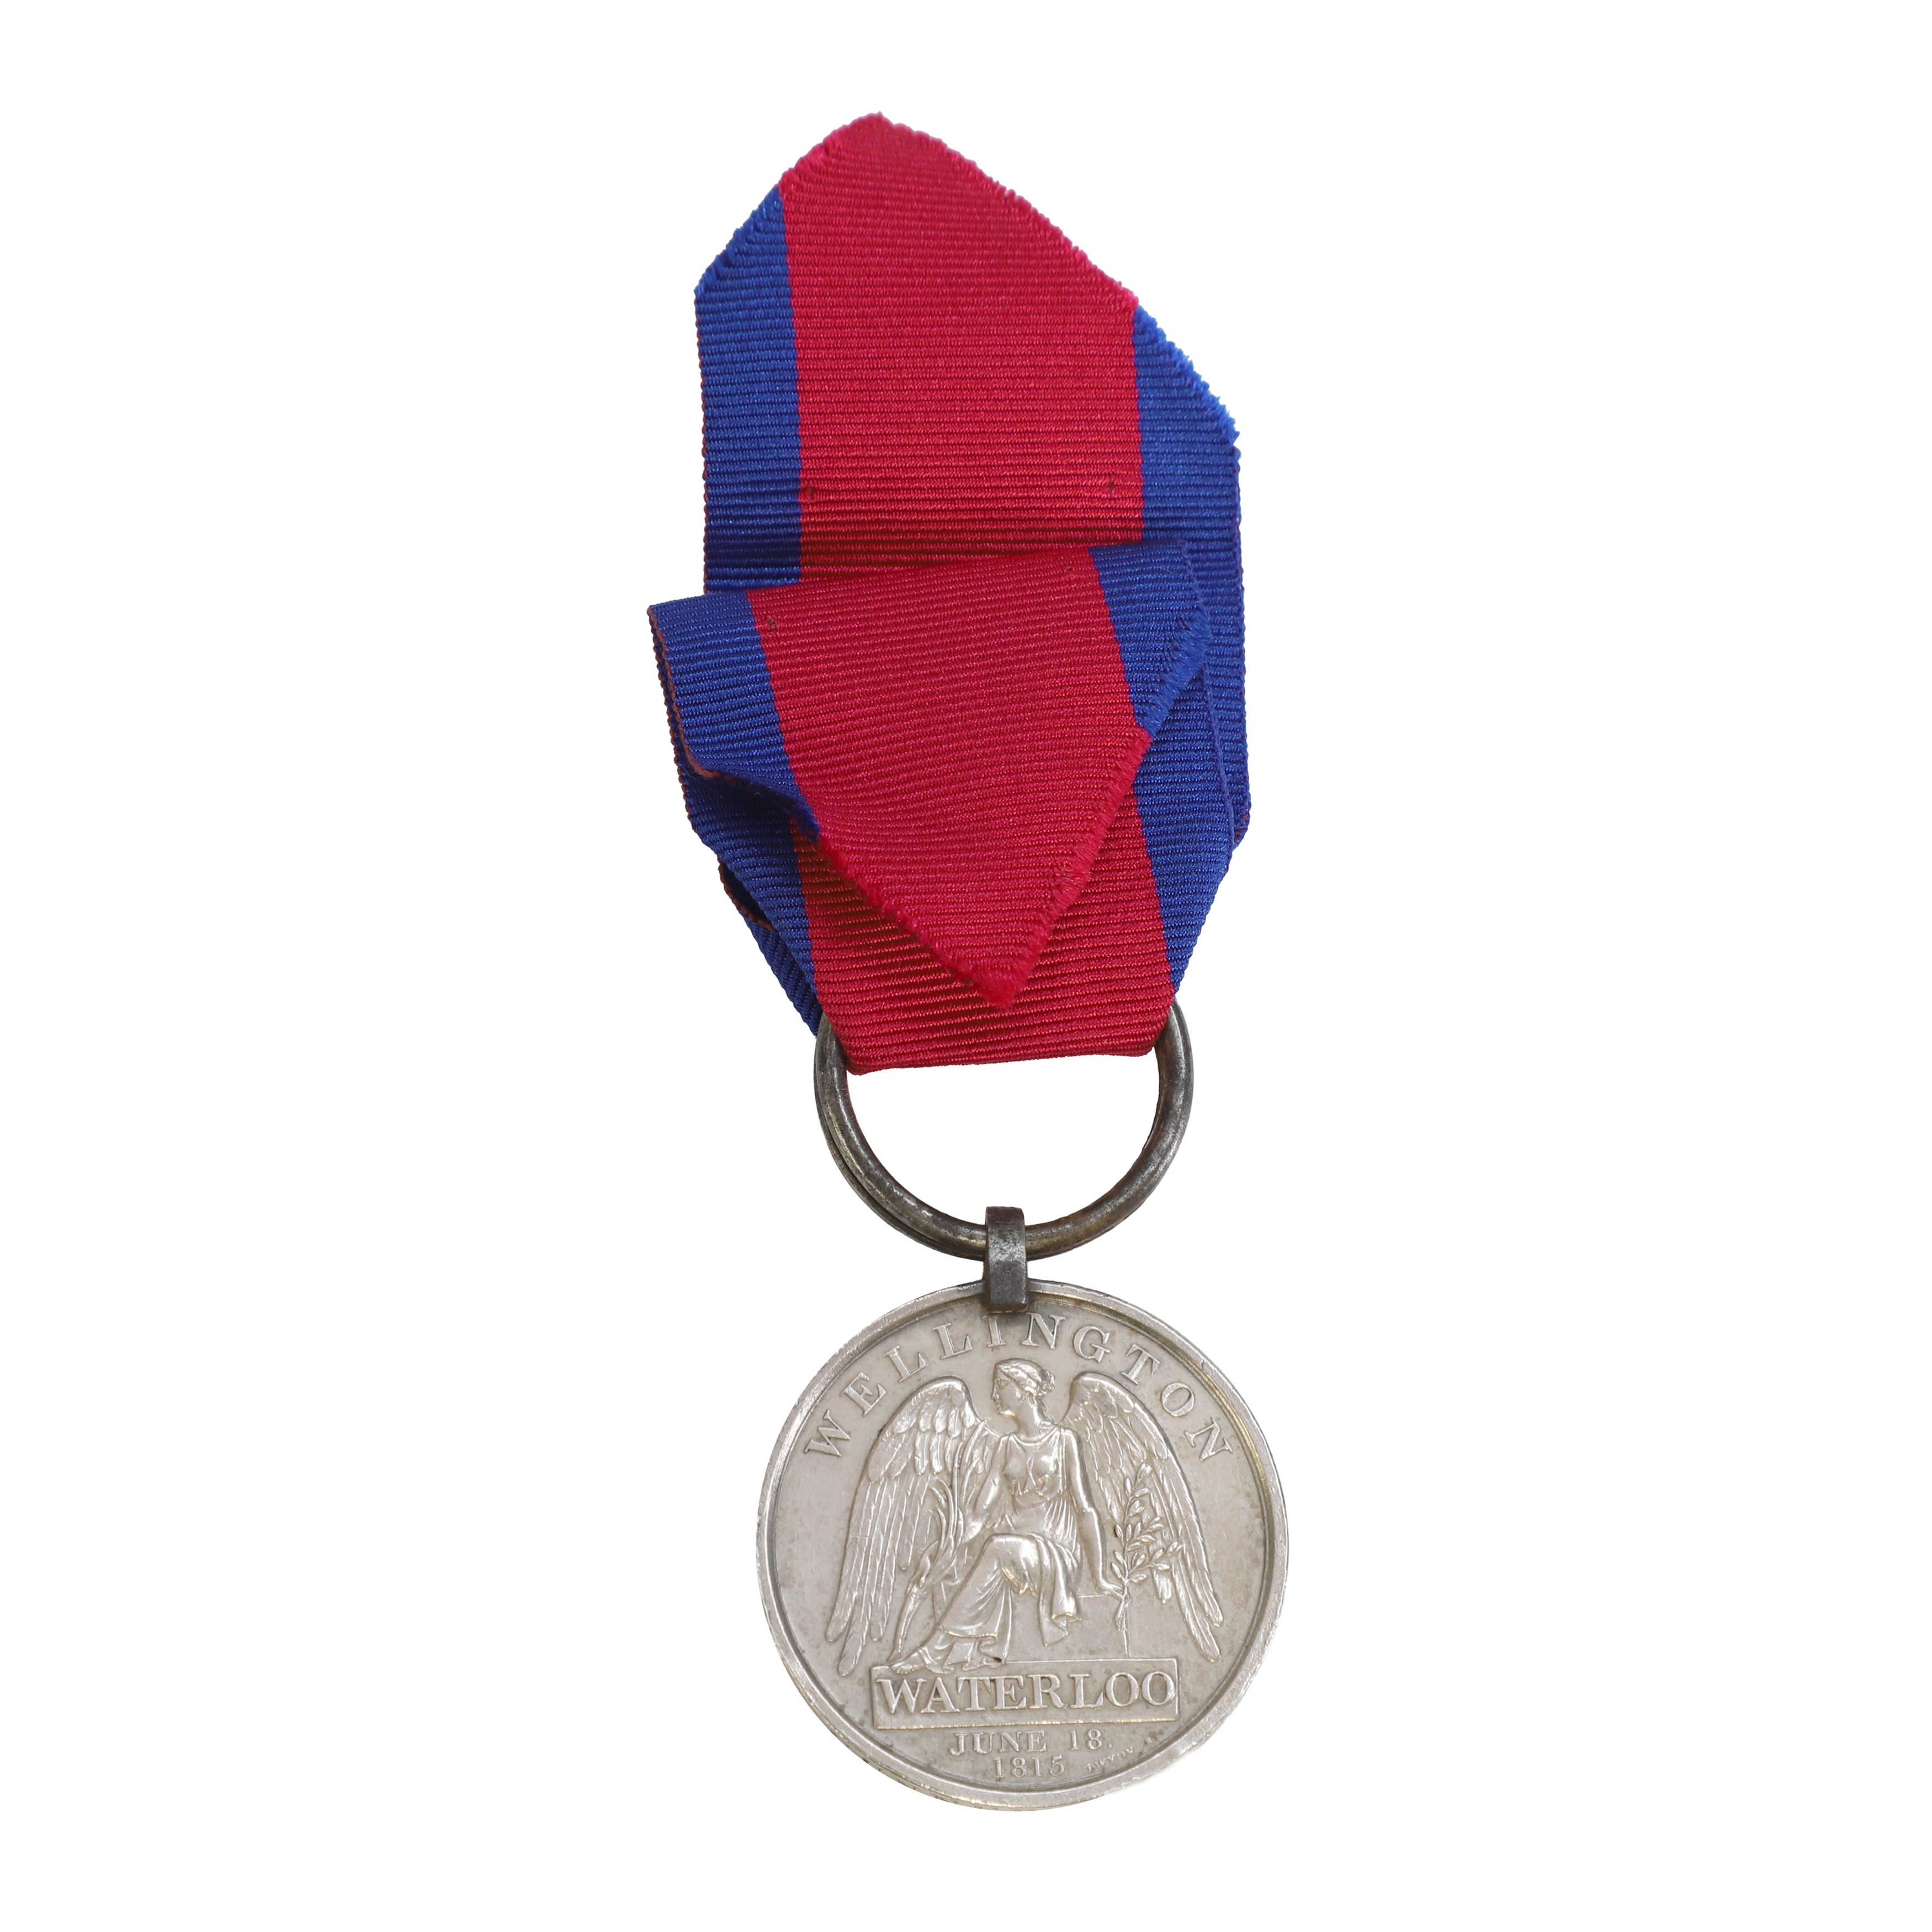 A Waterloo medal (£800-1,200)